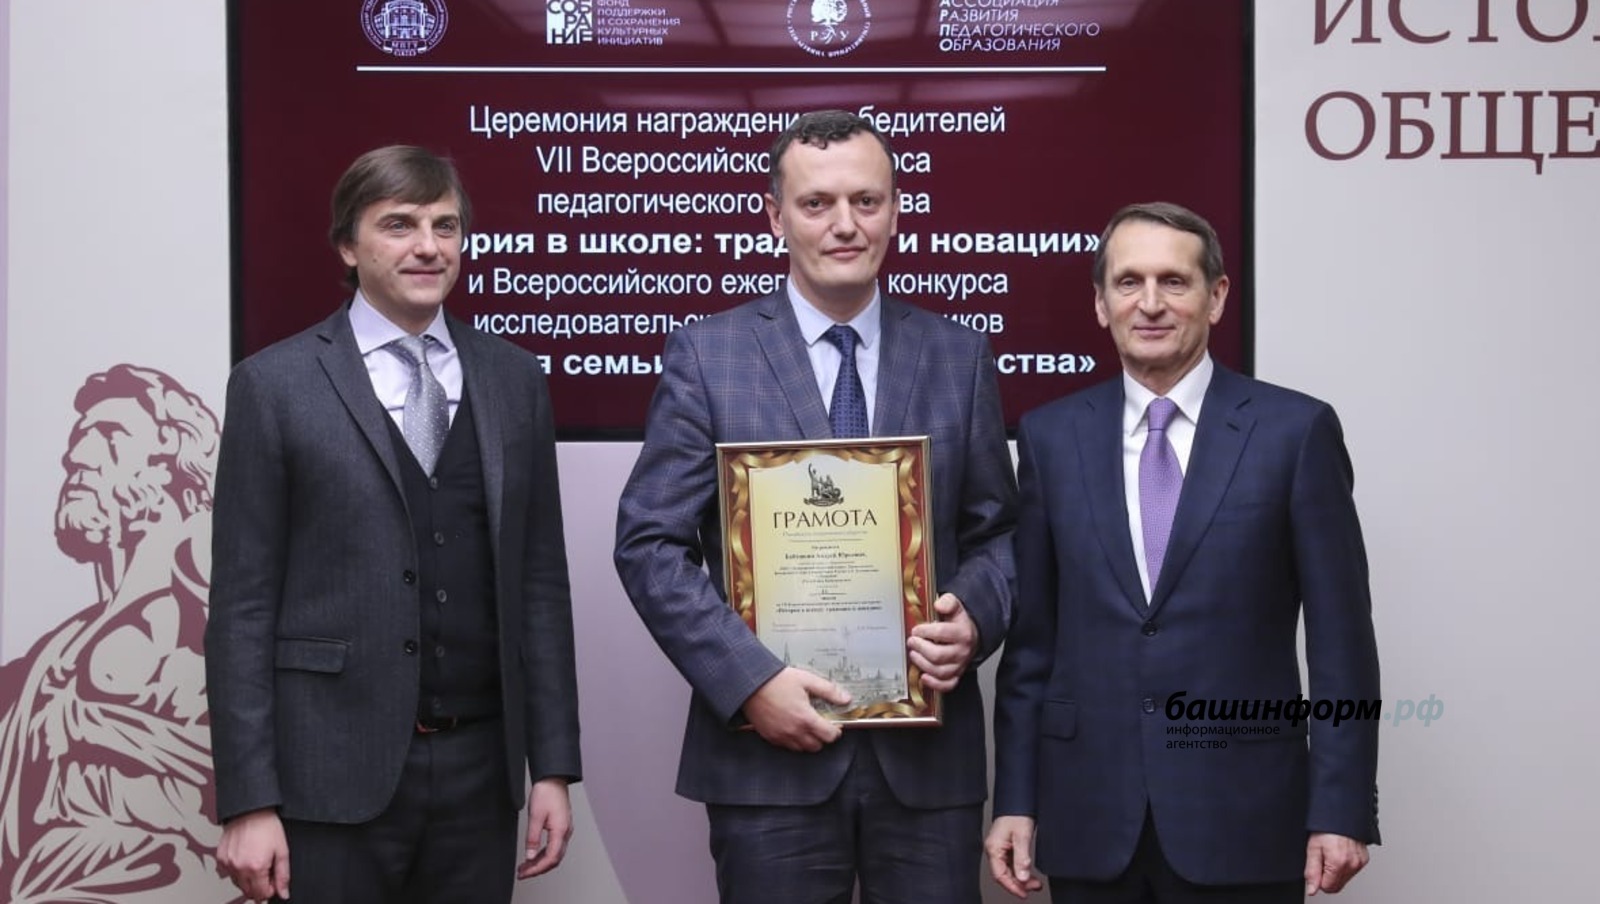 Учитель истории из Башкирии победил во Всероссийском конкурсе педагогического мастерства